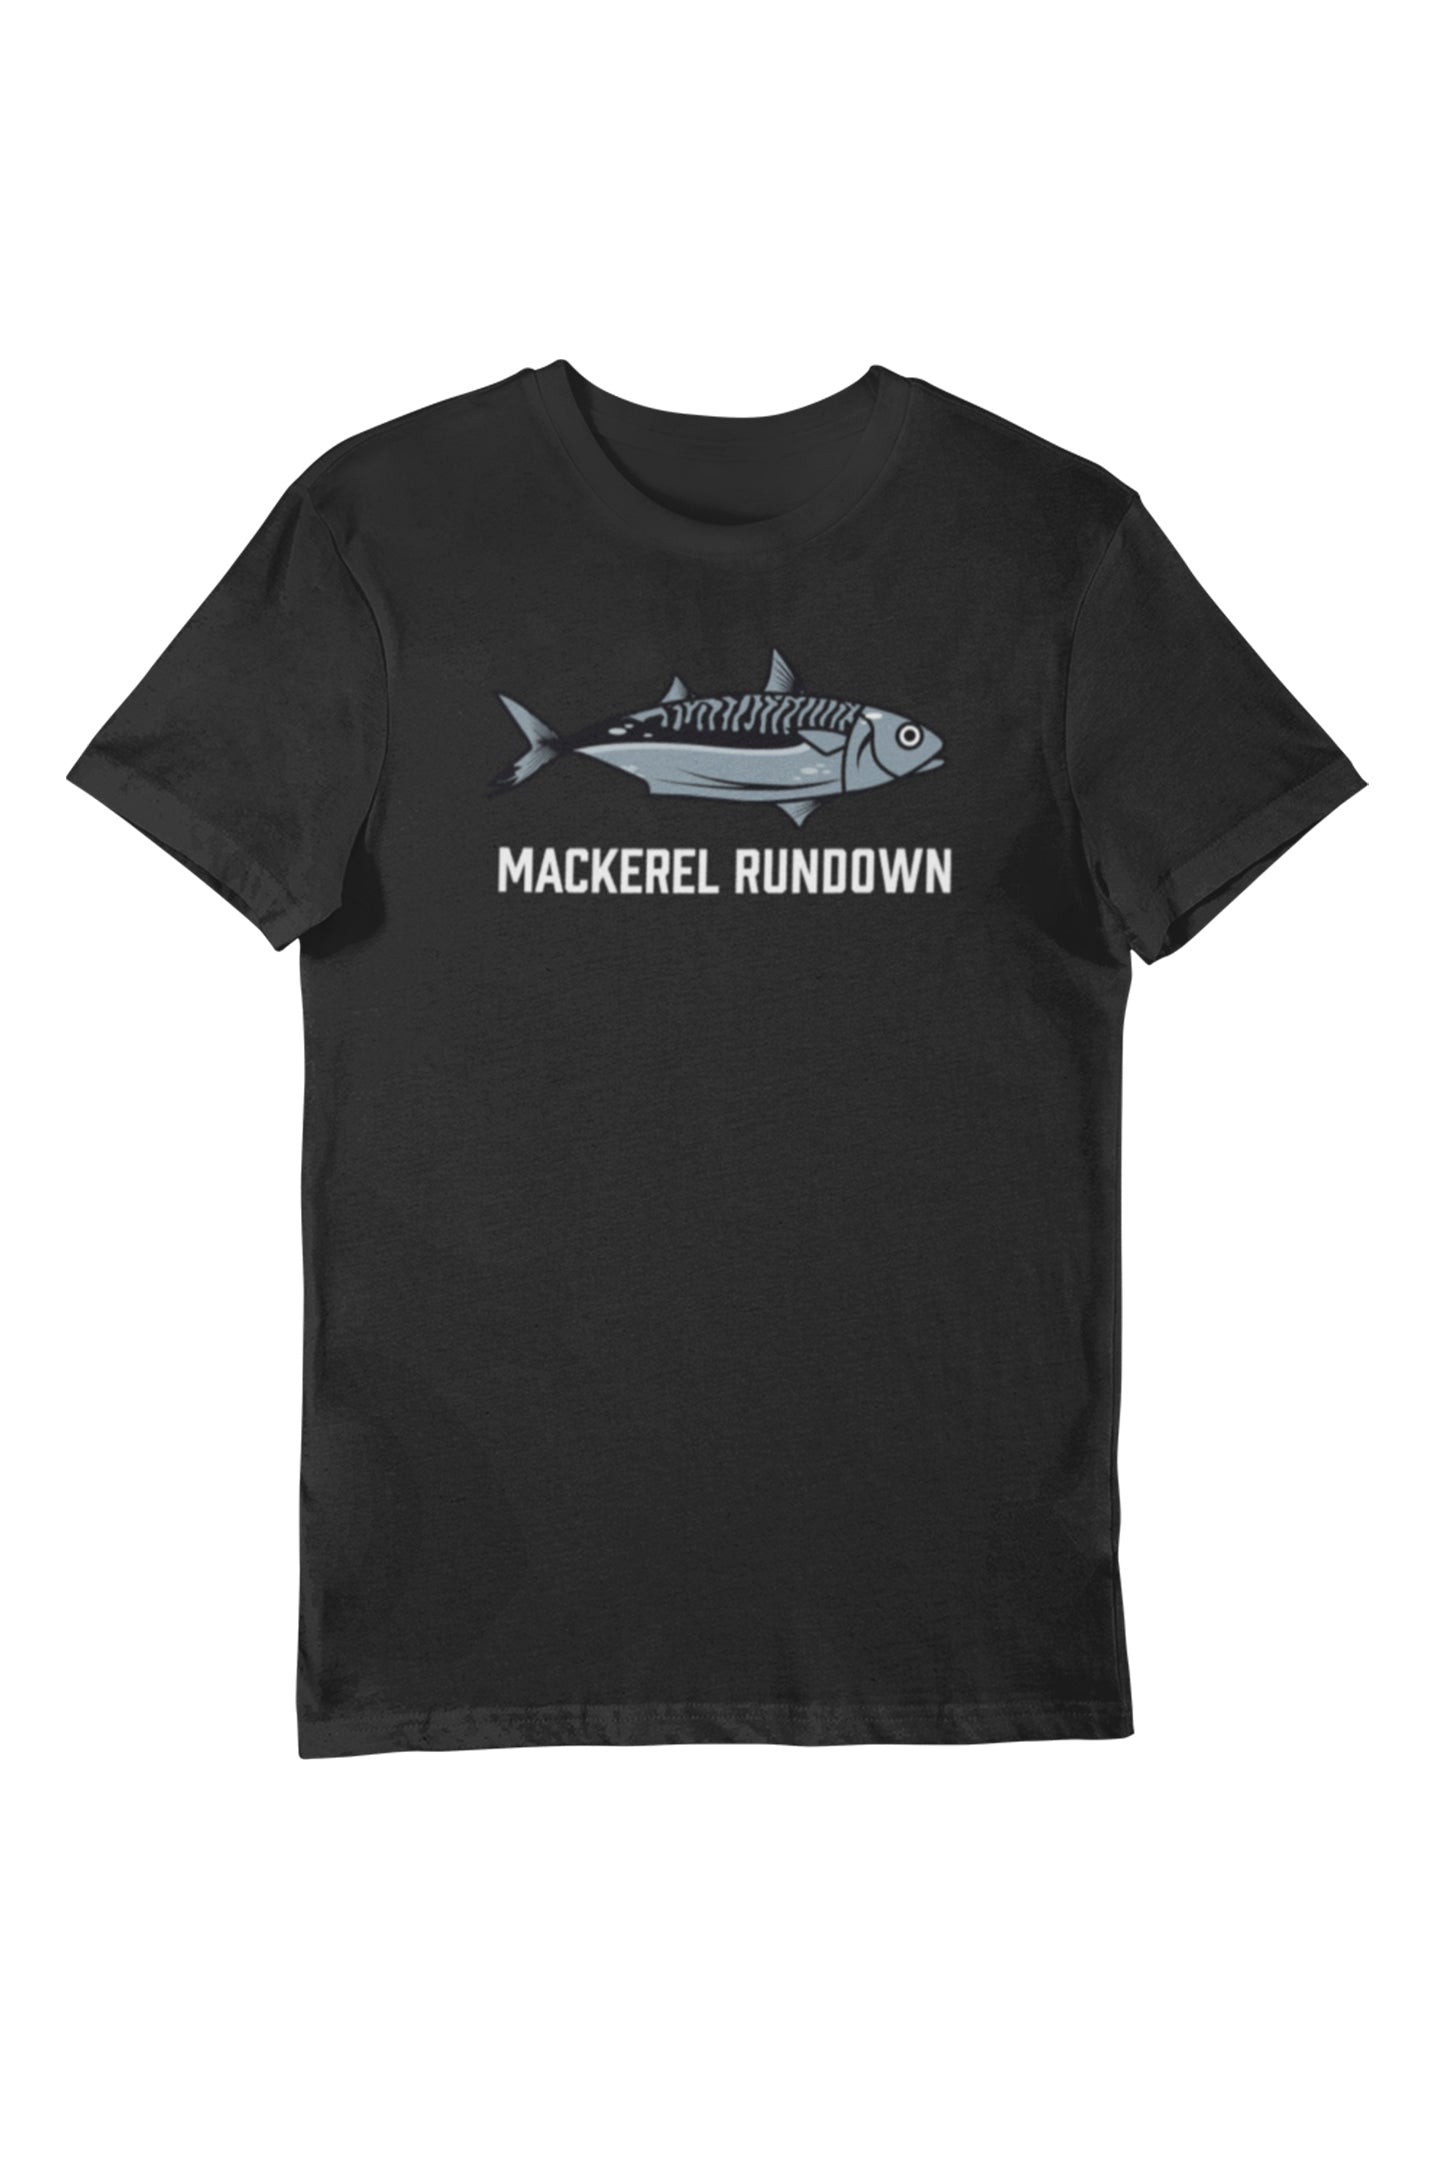 Mackerel Rundown